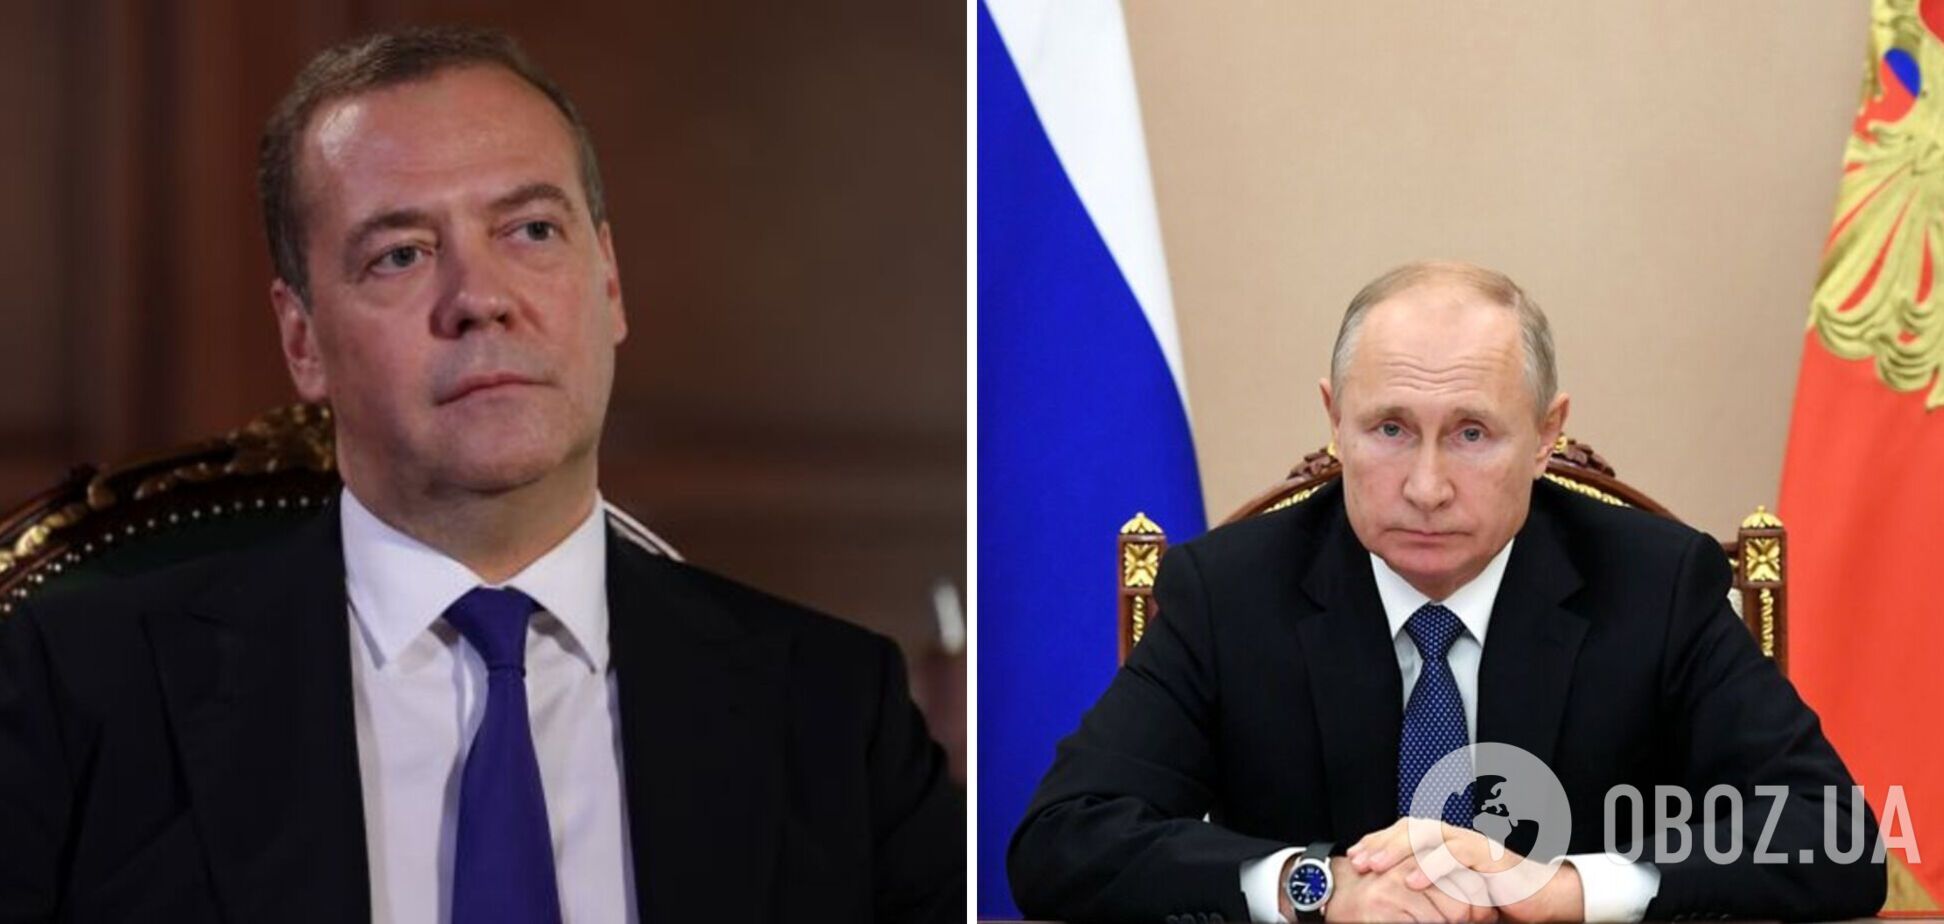 Медведев во время визита на оккупированный Донбасс называл себя преемником Путина и говорил о 'грандиозных' планах – разведка